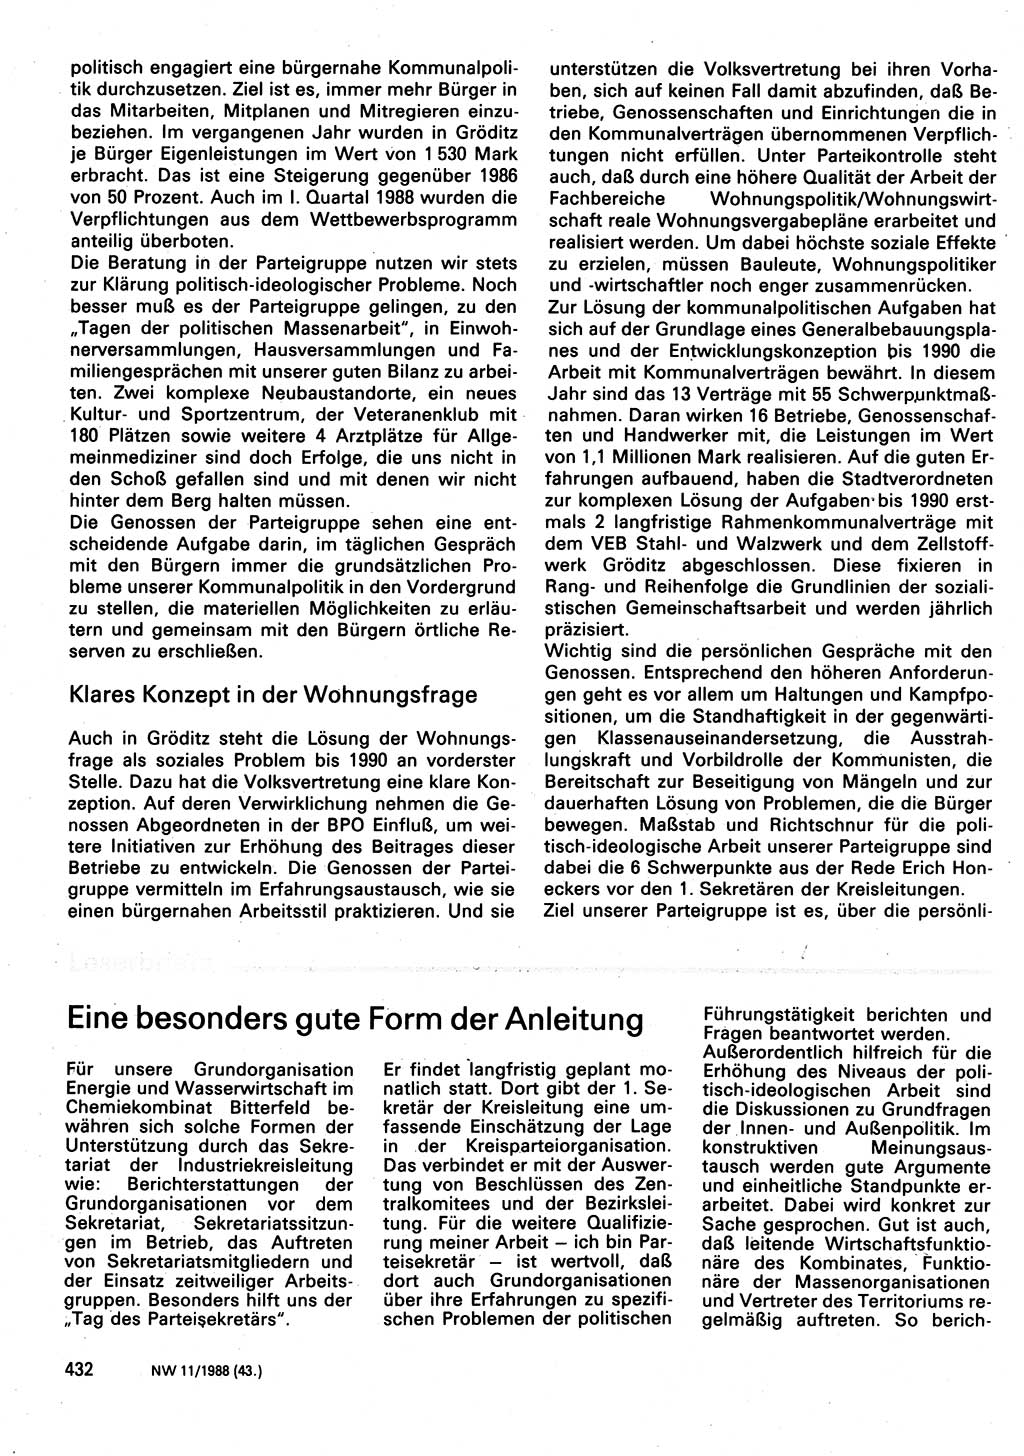 Neuer Weg (NW), Organ des Zentralkomitees (ZK) der SED (Sozialistische Einheitspartei Deutschlands) für Fragen des Parteilebens, 43. Jahrgang [Deutsche Demokratische Republik (DDR)] 1988, Seite 432 (NW ZK SED DDR 1988, S. 432)